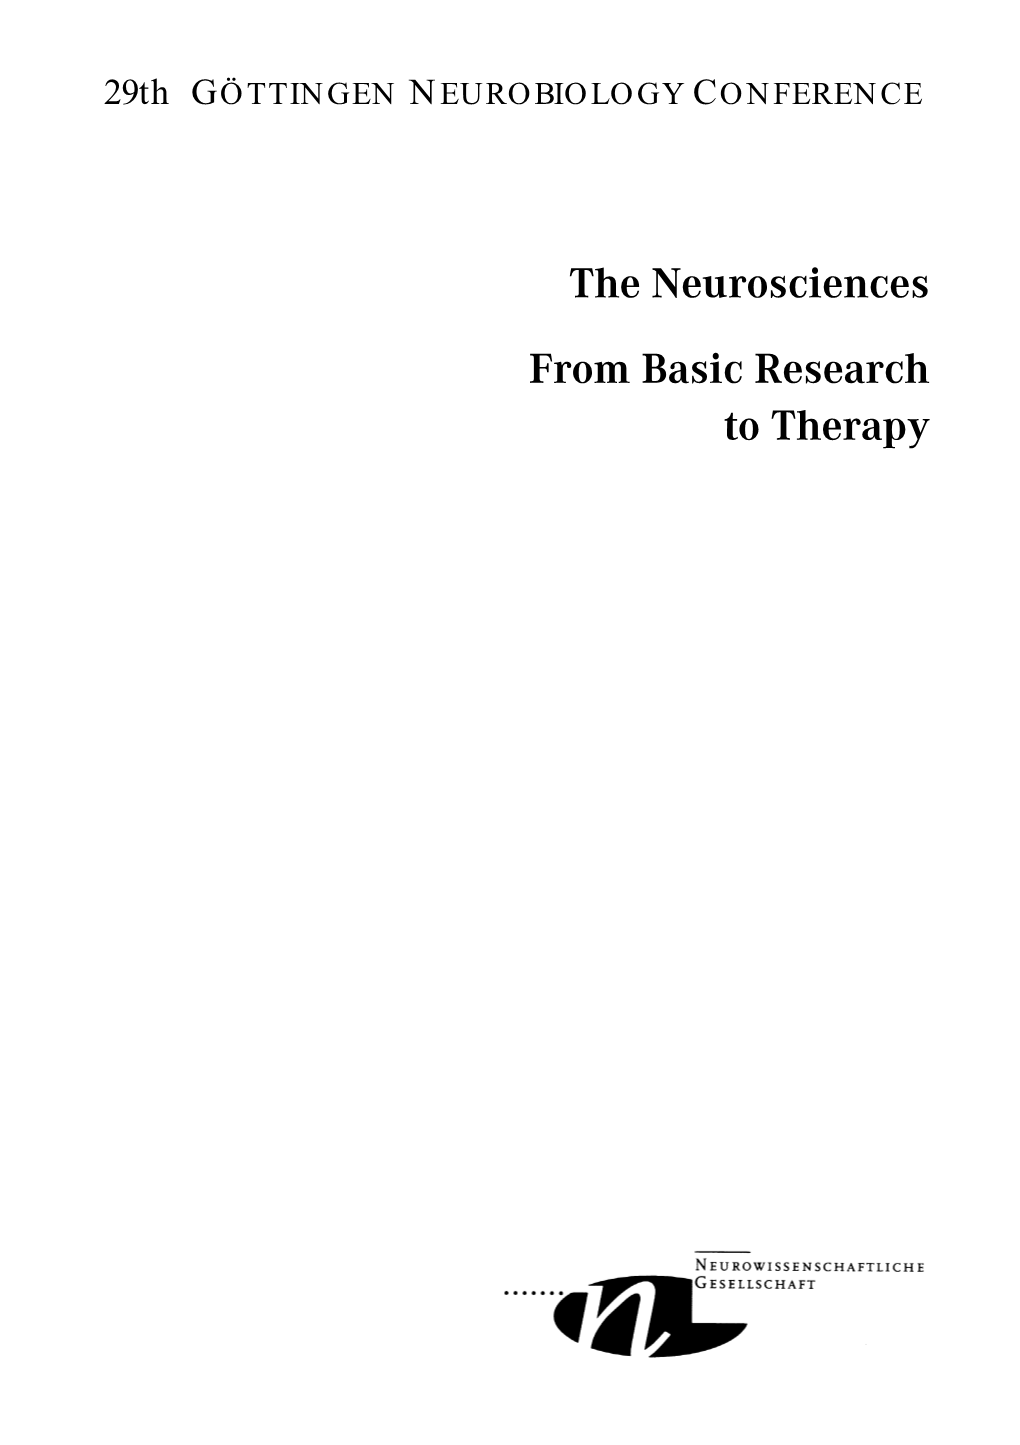 29. Goettingen Neurobiology Conference Programme Booklet